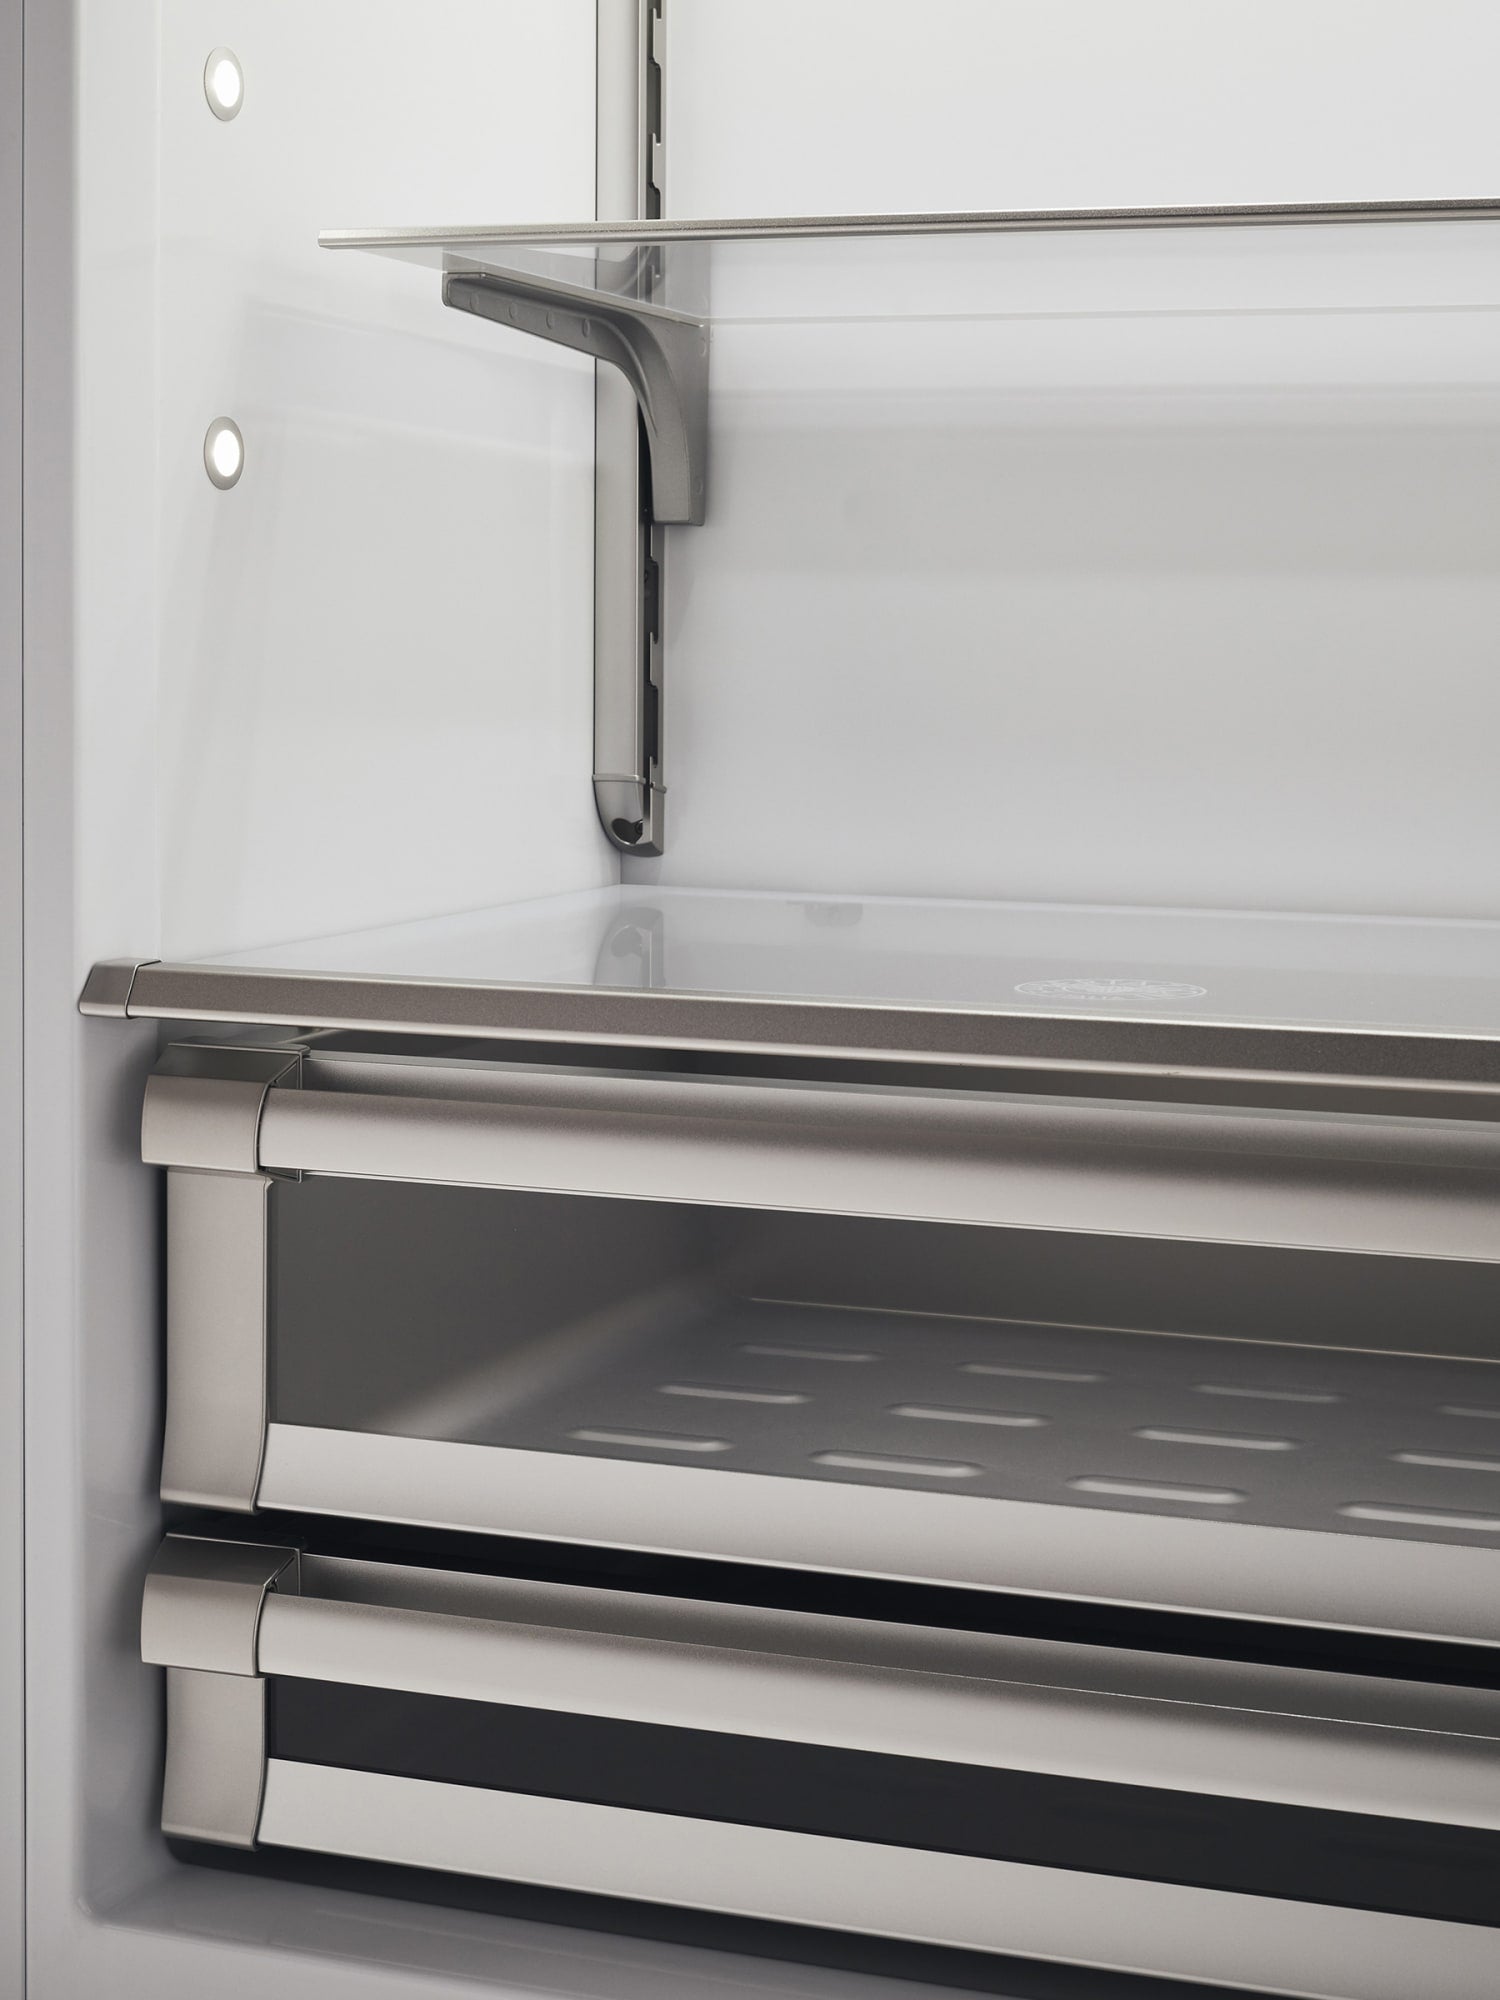 Bertazzoni | 30" Built-in refrigerator - Panel ready - Left swing door | REF30PRL